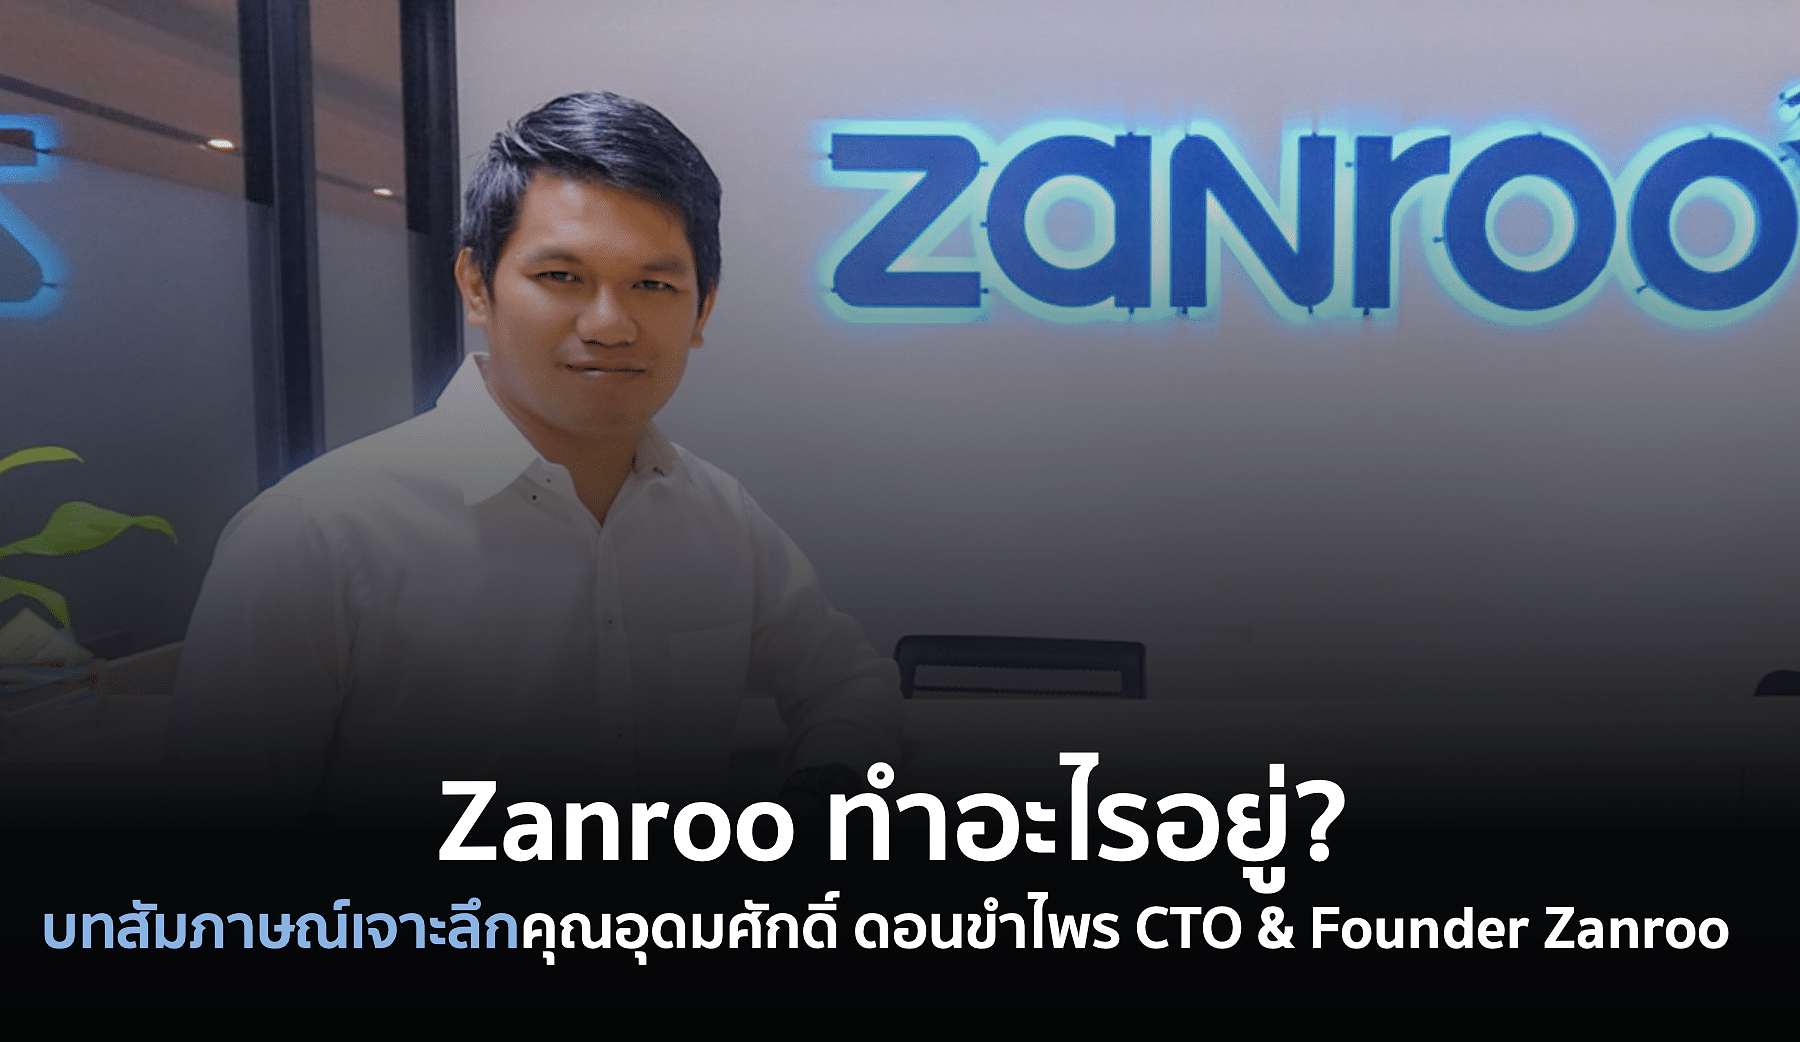 คุณอุดมศักดิ์ CTO & Founder Zanroo